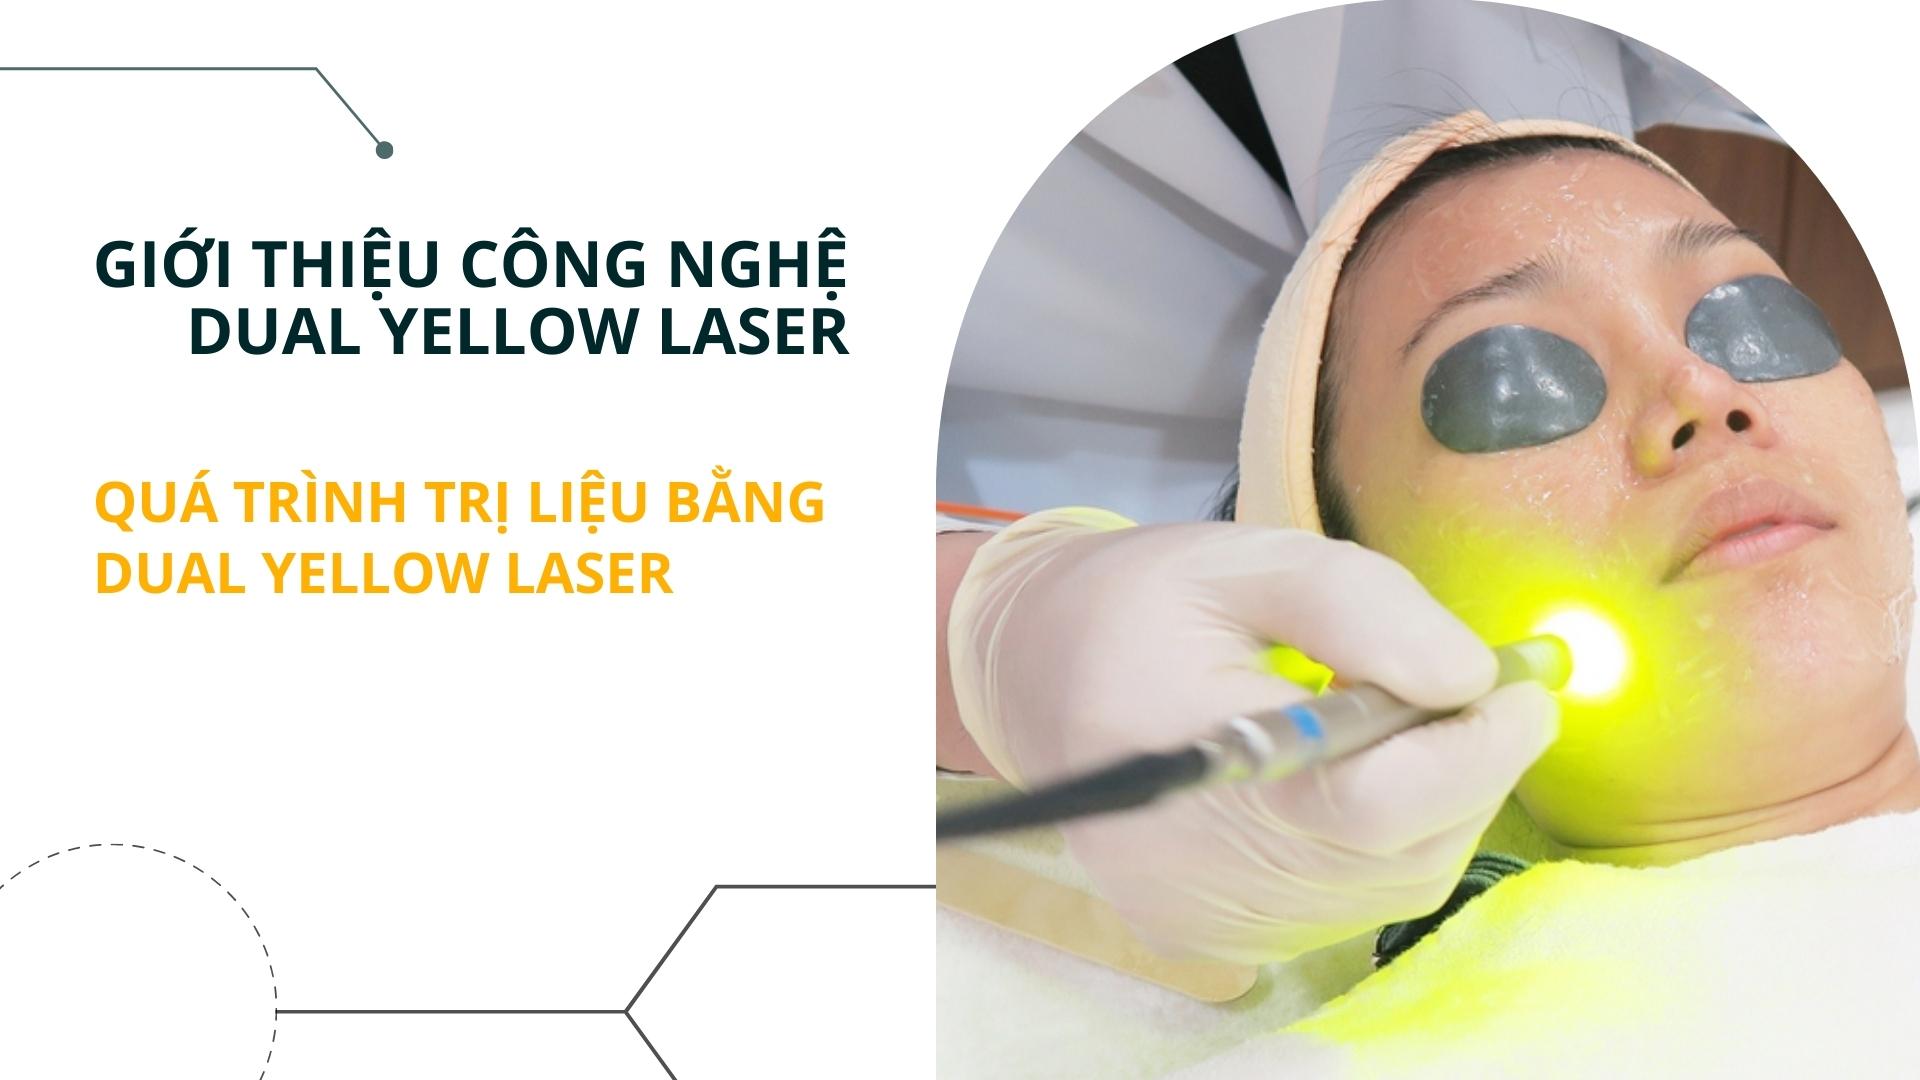 Quá trình trị liệu bằng Dual Yellow Laser